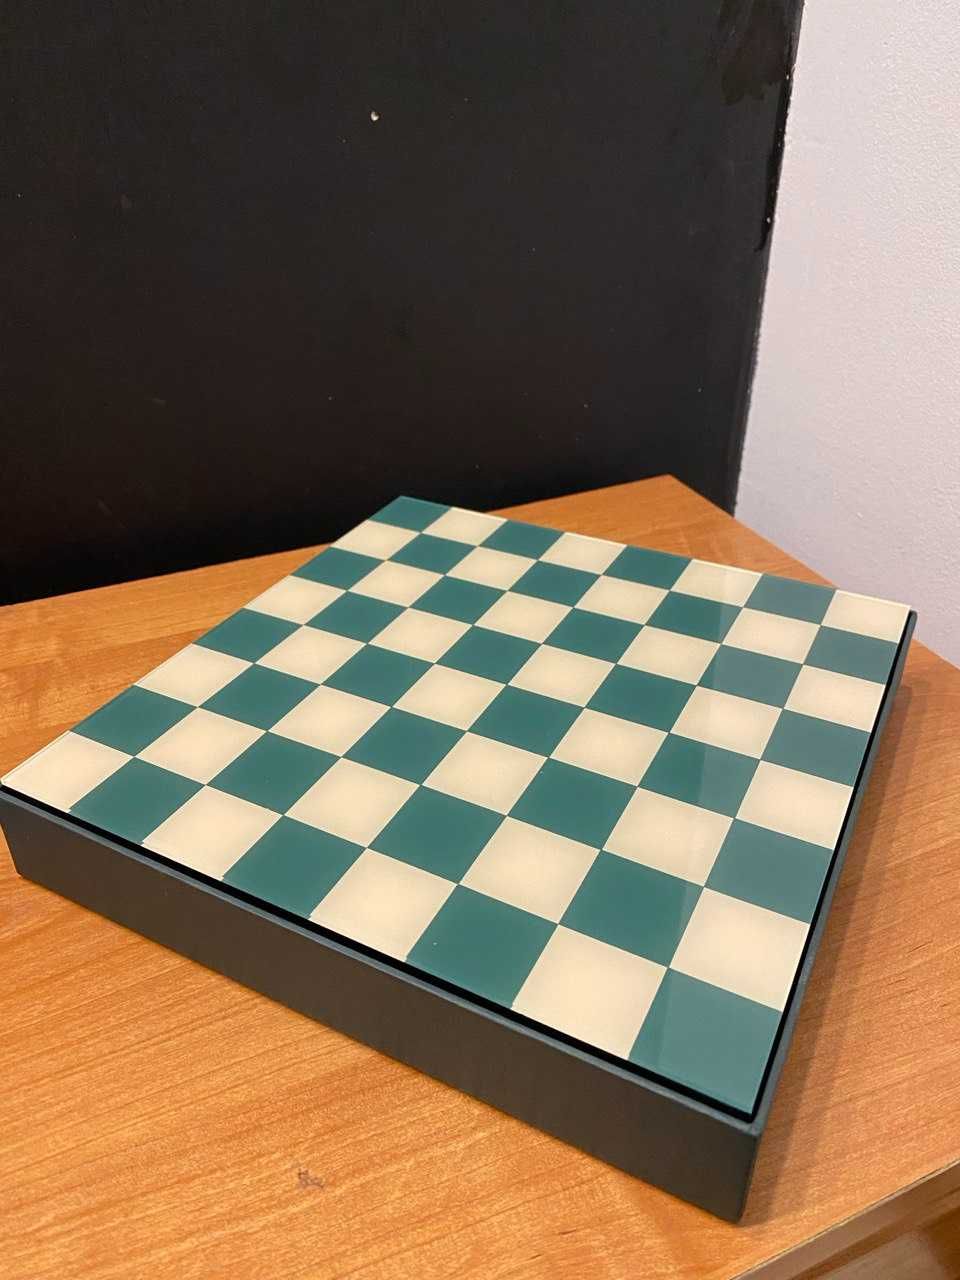 Продам набор шахмат CHESS